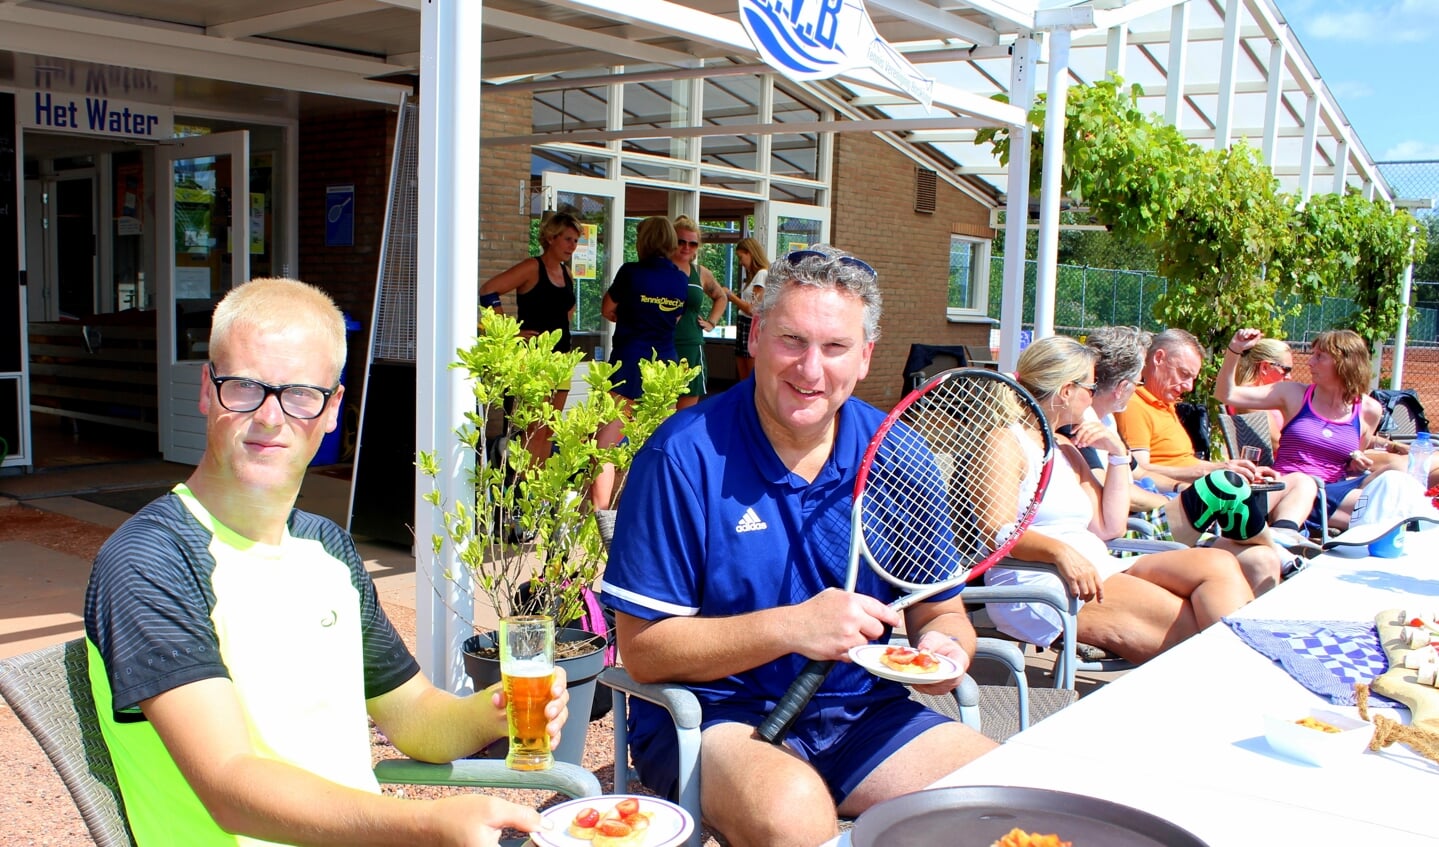 Bijschrift: Jimmy Scholten (25) en Ruud Scholten (51), geen familie van elkaar, doen mee aan het singles tennistoernooi. Ze werden ontvangen met een aardbeienhartje met slagroom. 